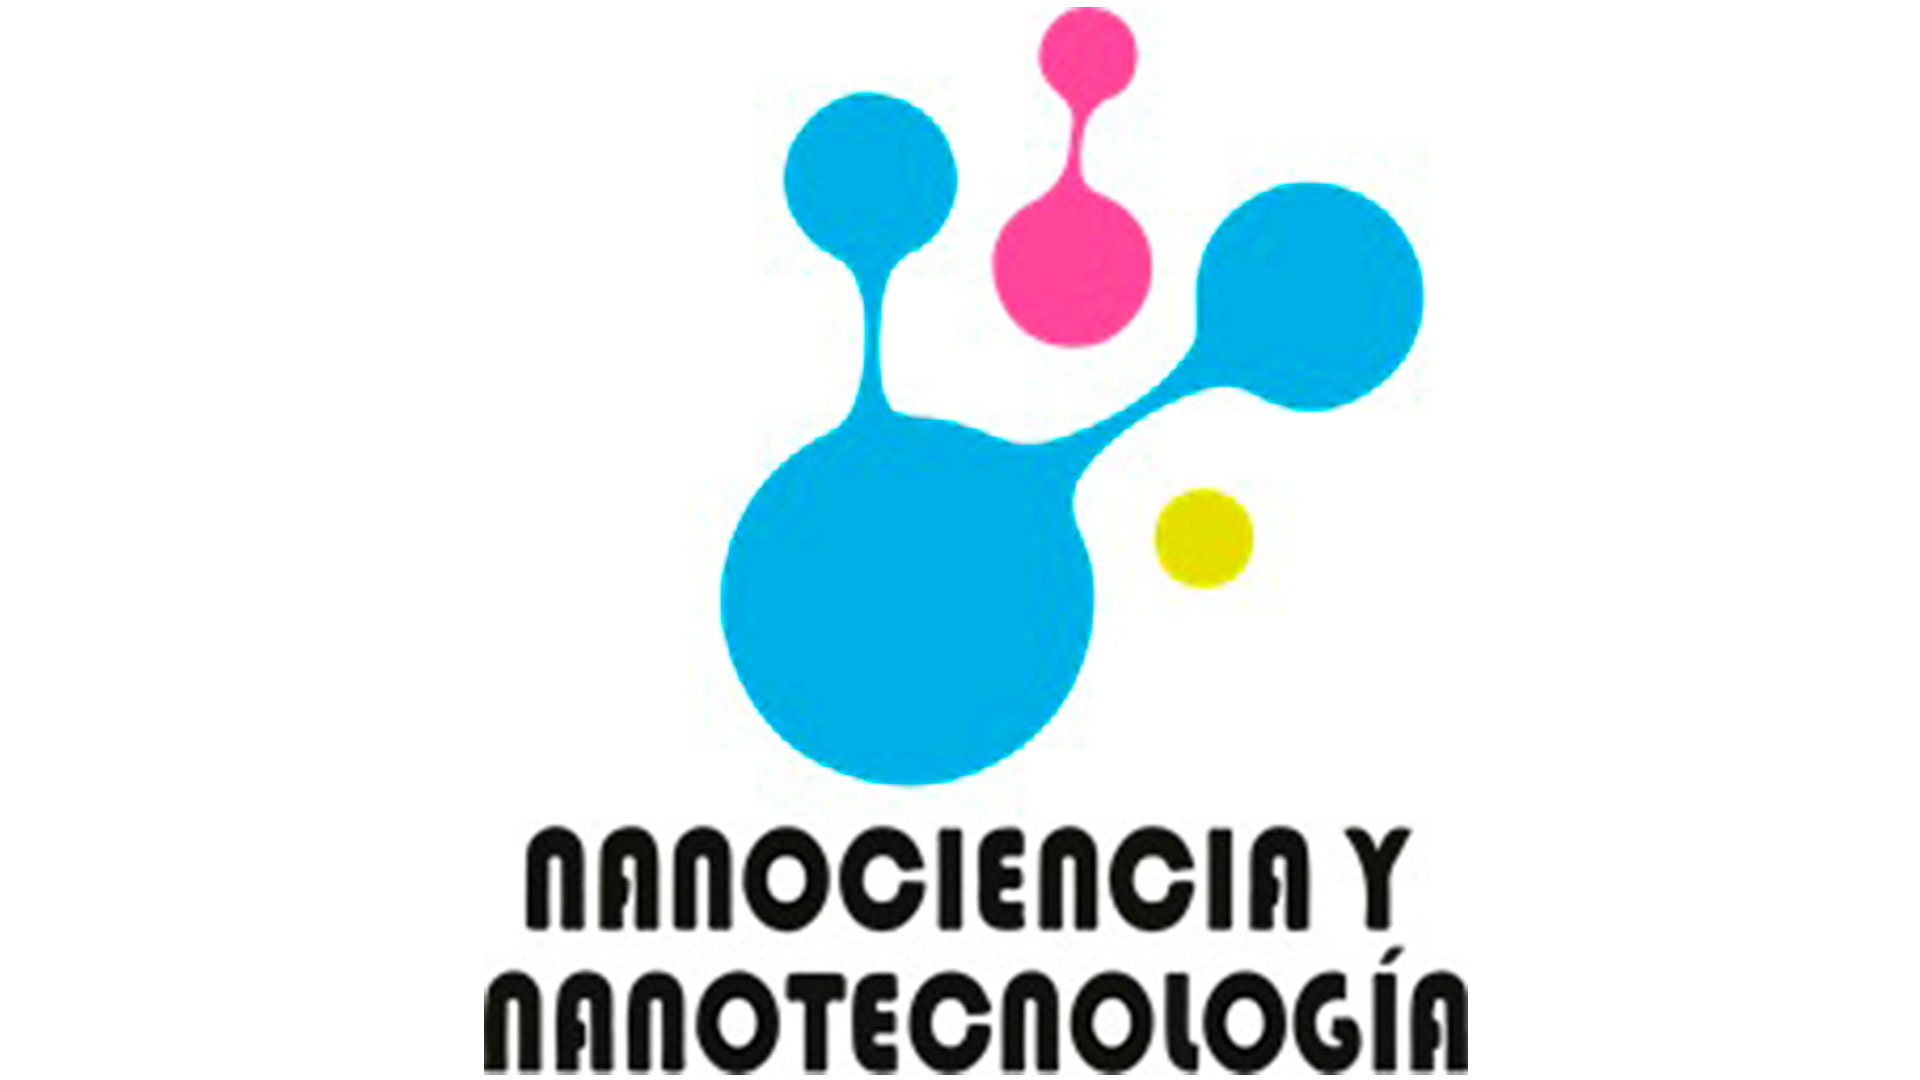 Grupo de Investigación Nanociencia y Nanotecnología (2)